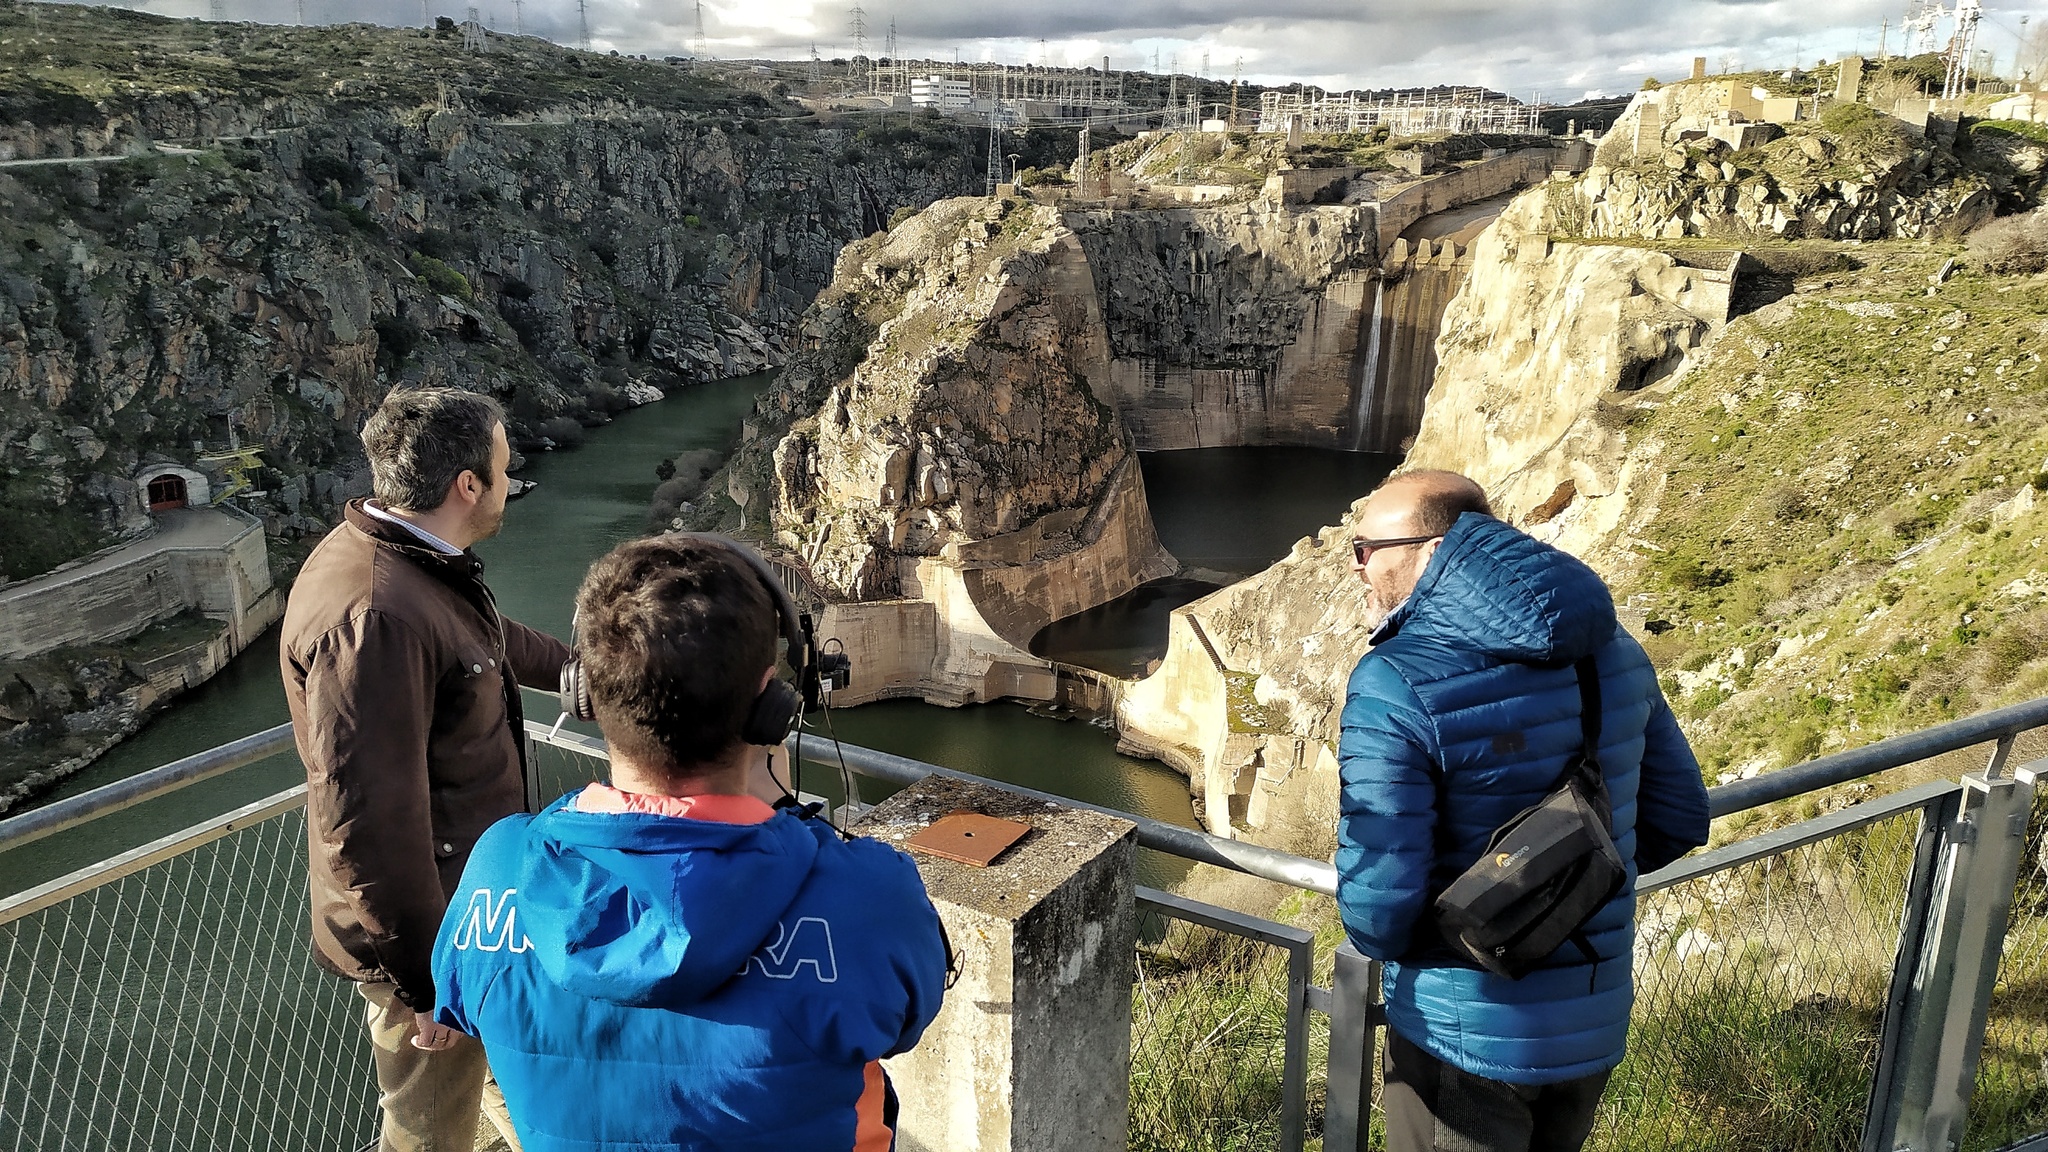 La presa de Ricobayo, en Zamora, una de las megaestructuras construídas durante el franquismo que forman parte de la docuserie.